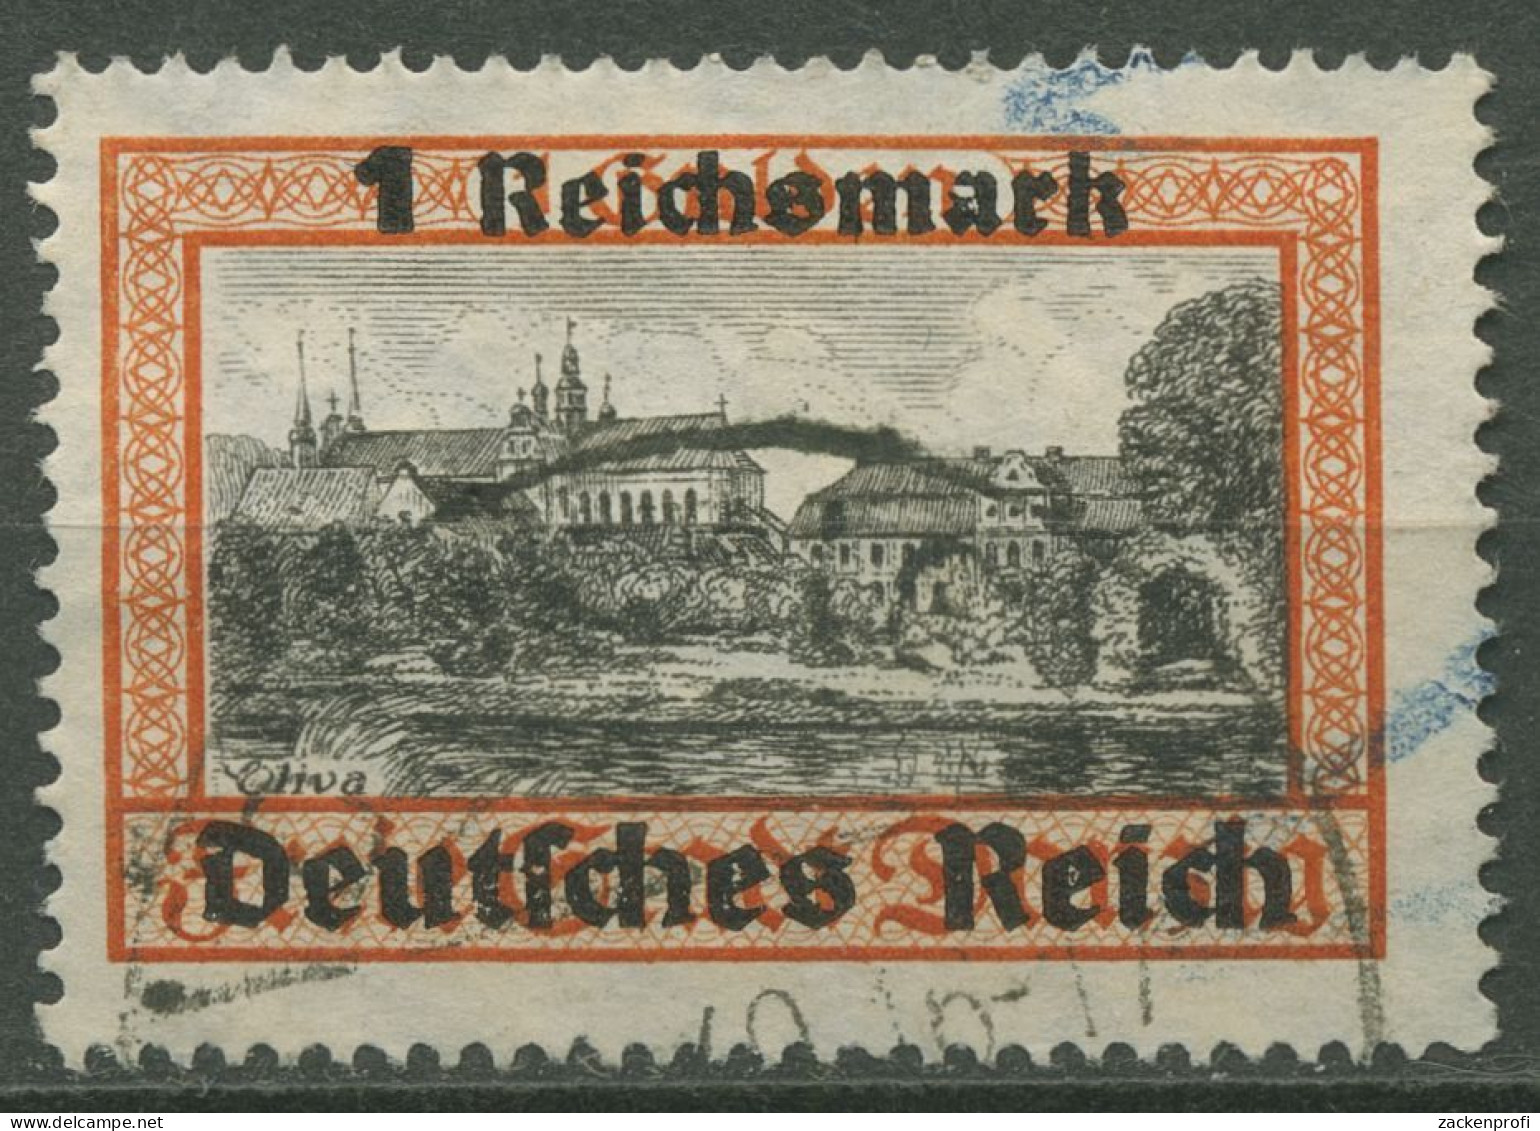 Deutsches Reich 1939 Danzig Mit Aufdruck 728 Gestempelt (R80721) - Oblitérés